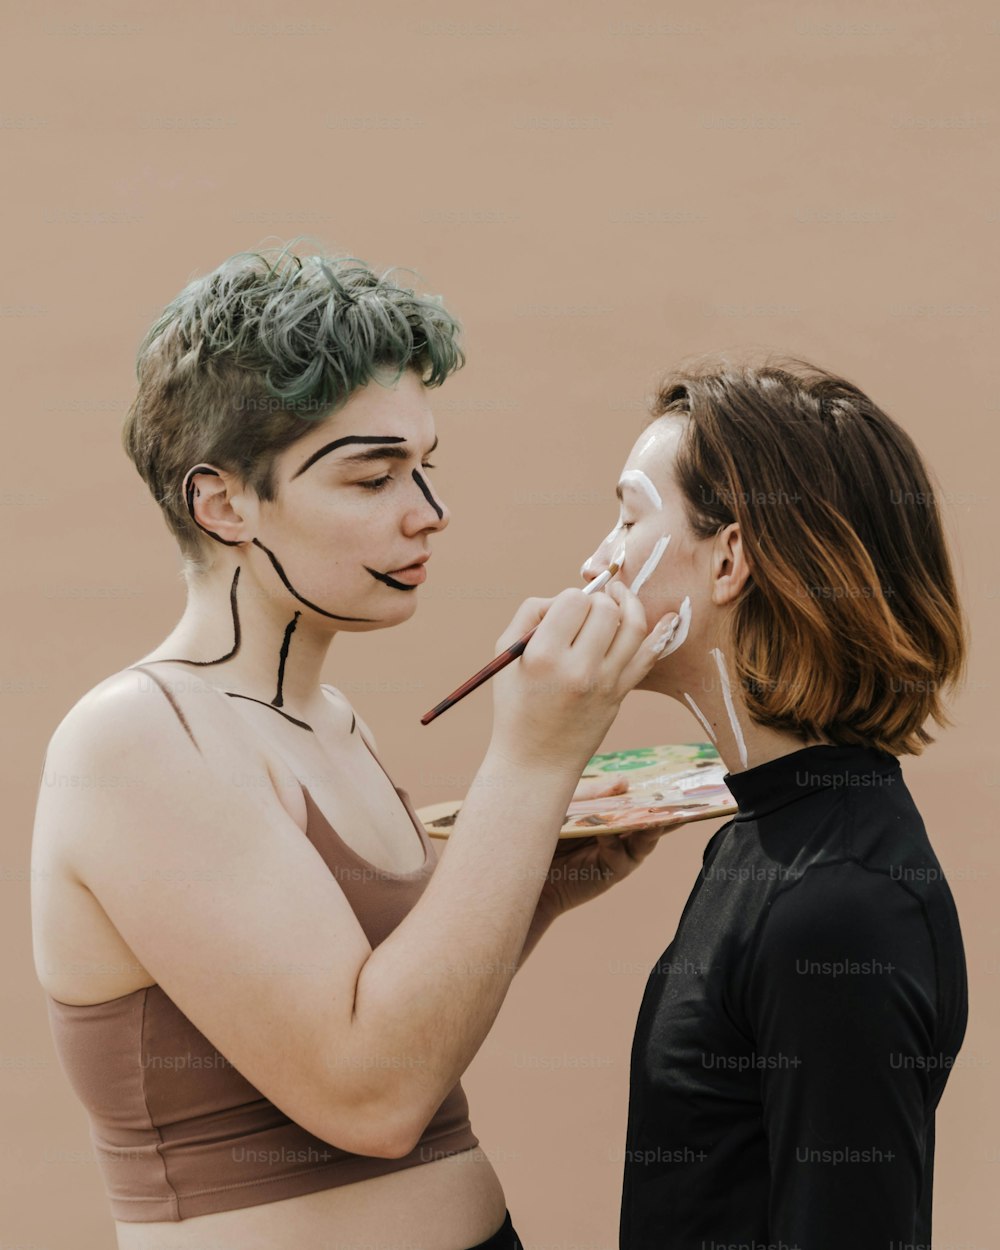 uma mulher está pintando o rosto de outra mulher com tinta branca